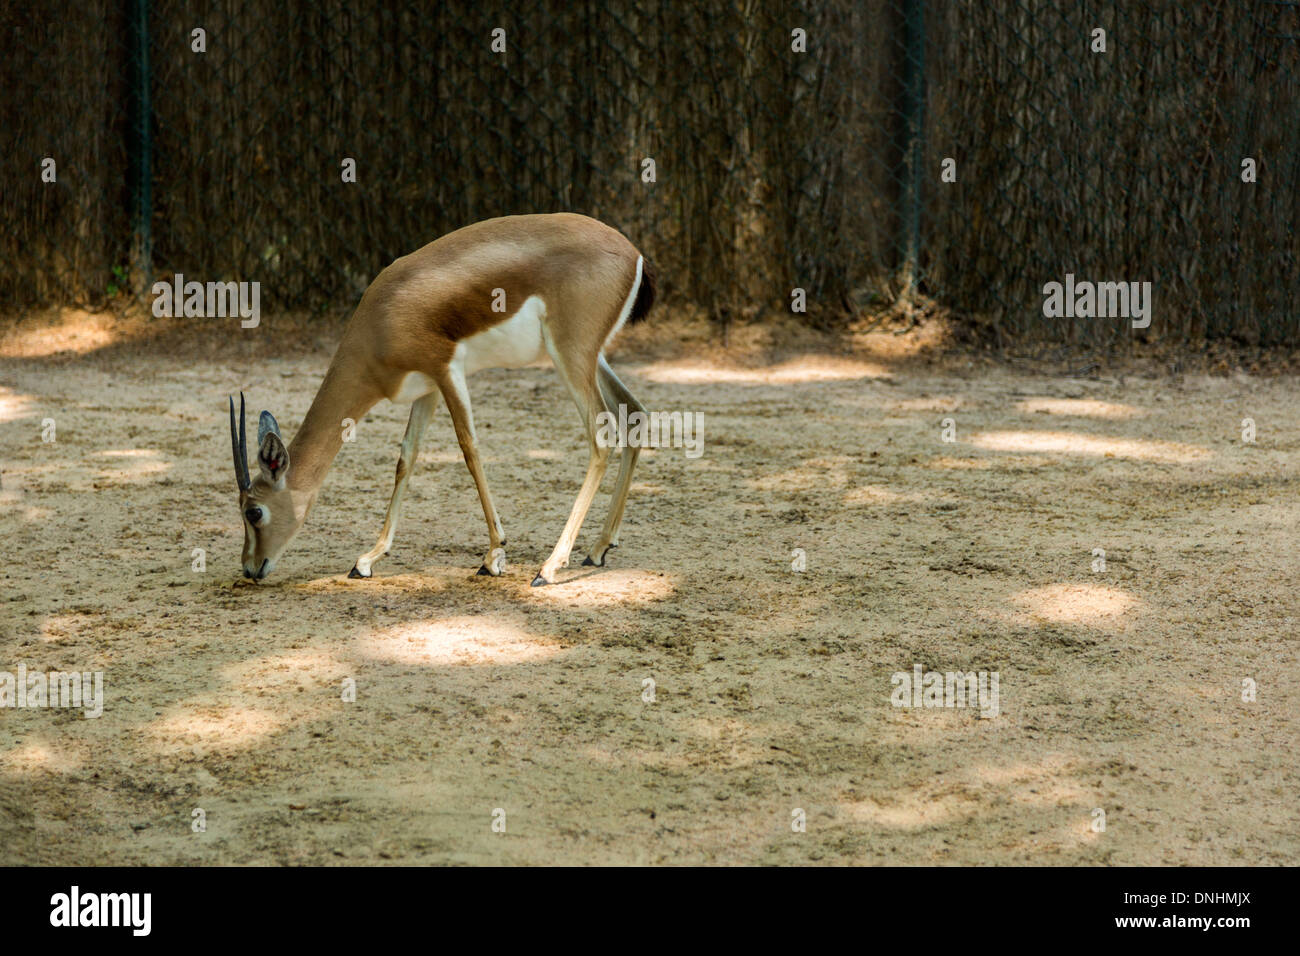 Gazelle dans un zoo, le Zoo de Barcelone, Barcelone, Catalogne, Espagne Banque D'Images